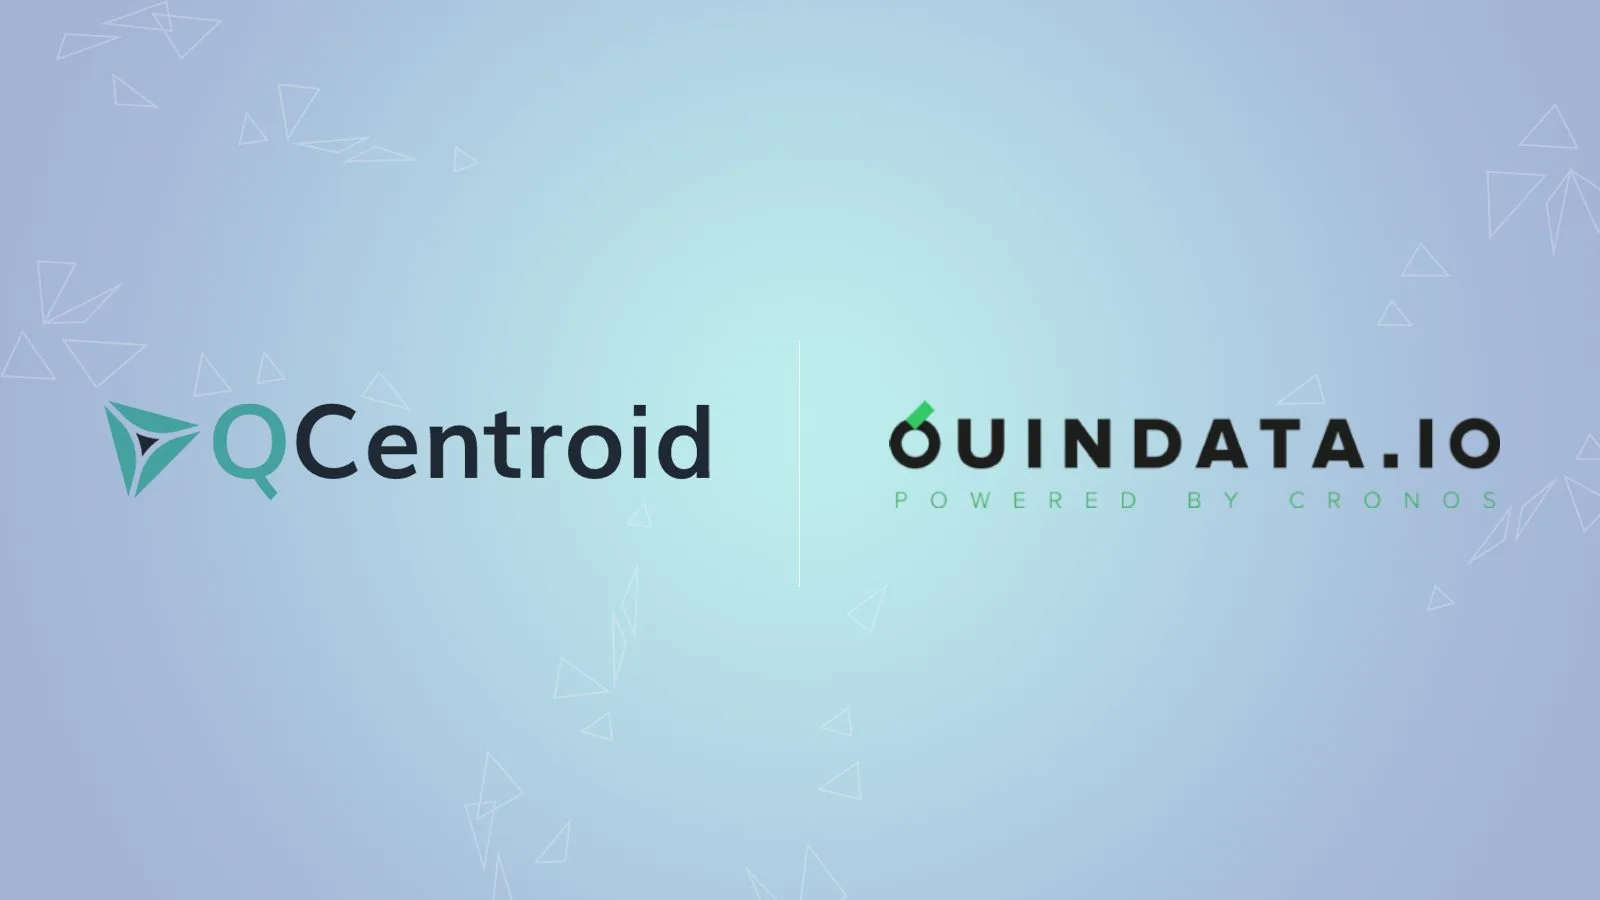 Qcentroid And Quindata.io Partner To Propel Quantum Computing In Benelux Businesses